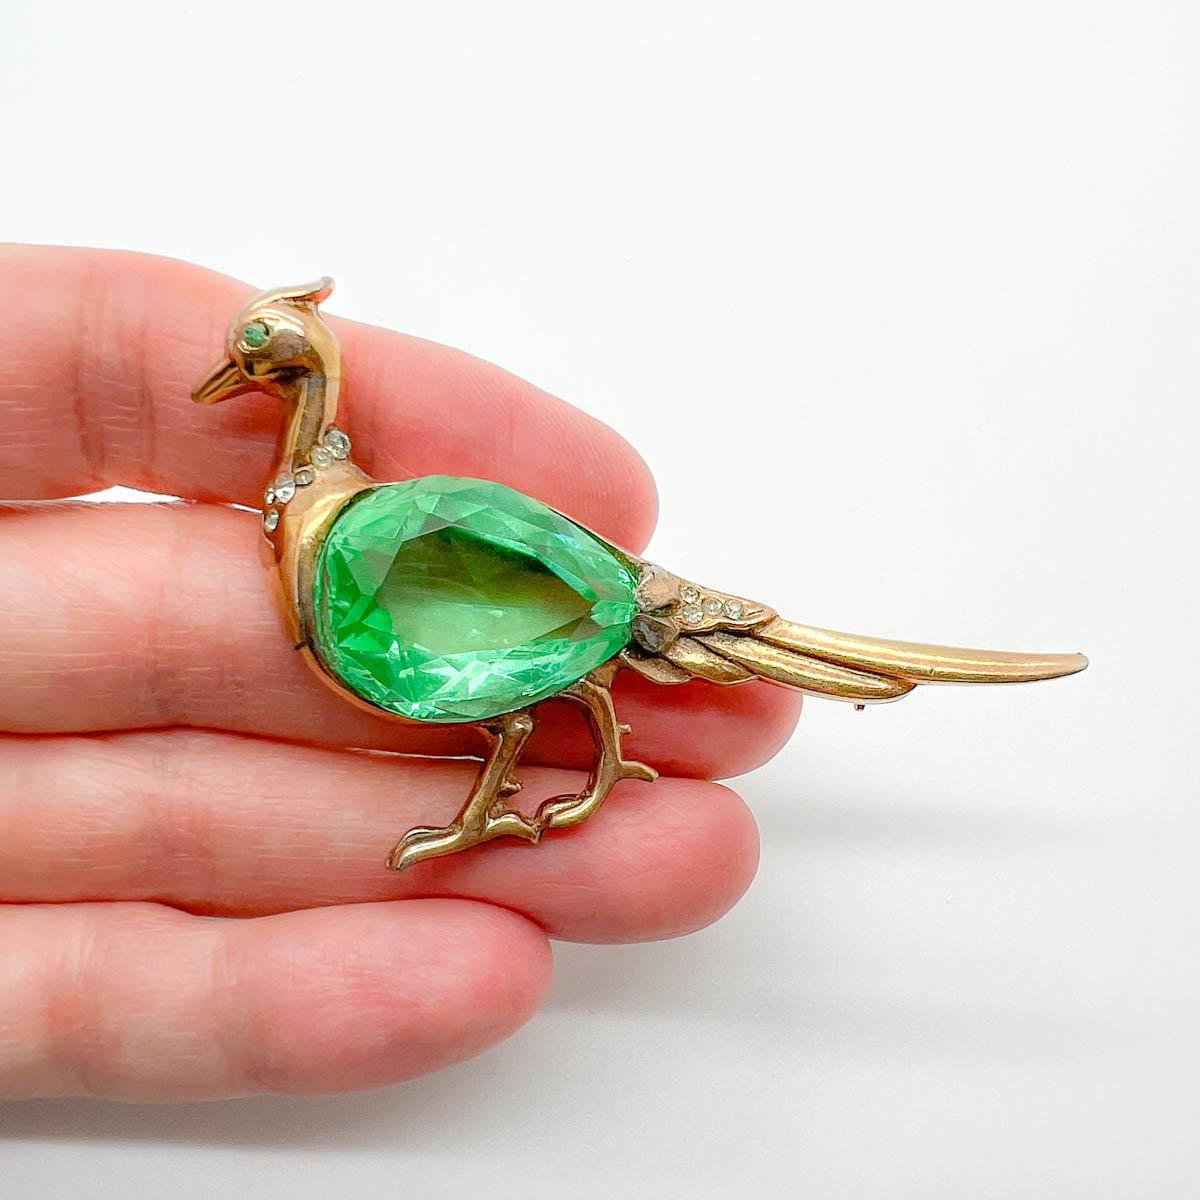 Une charmante broche vintage en forme de paon de Reja. Le travail du métal doré entoure un énorme cristal vert taillé représentant le corps du paon. Un trésor rare et fantaisiste de la maison de bijoux fantaisie Reja dans les années 1940. Une